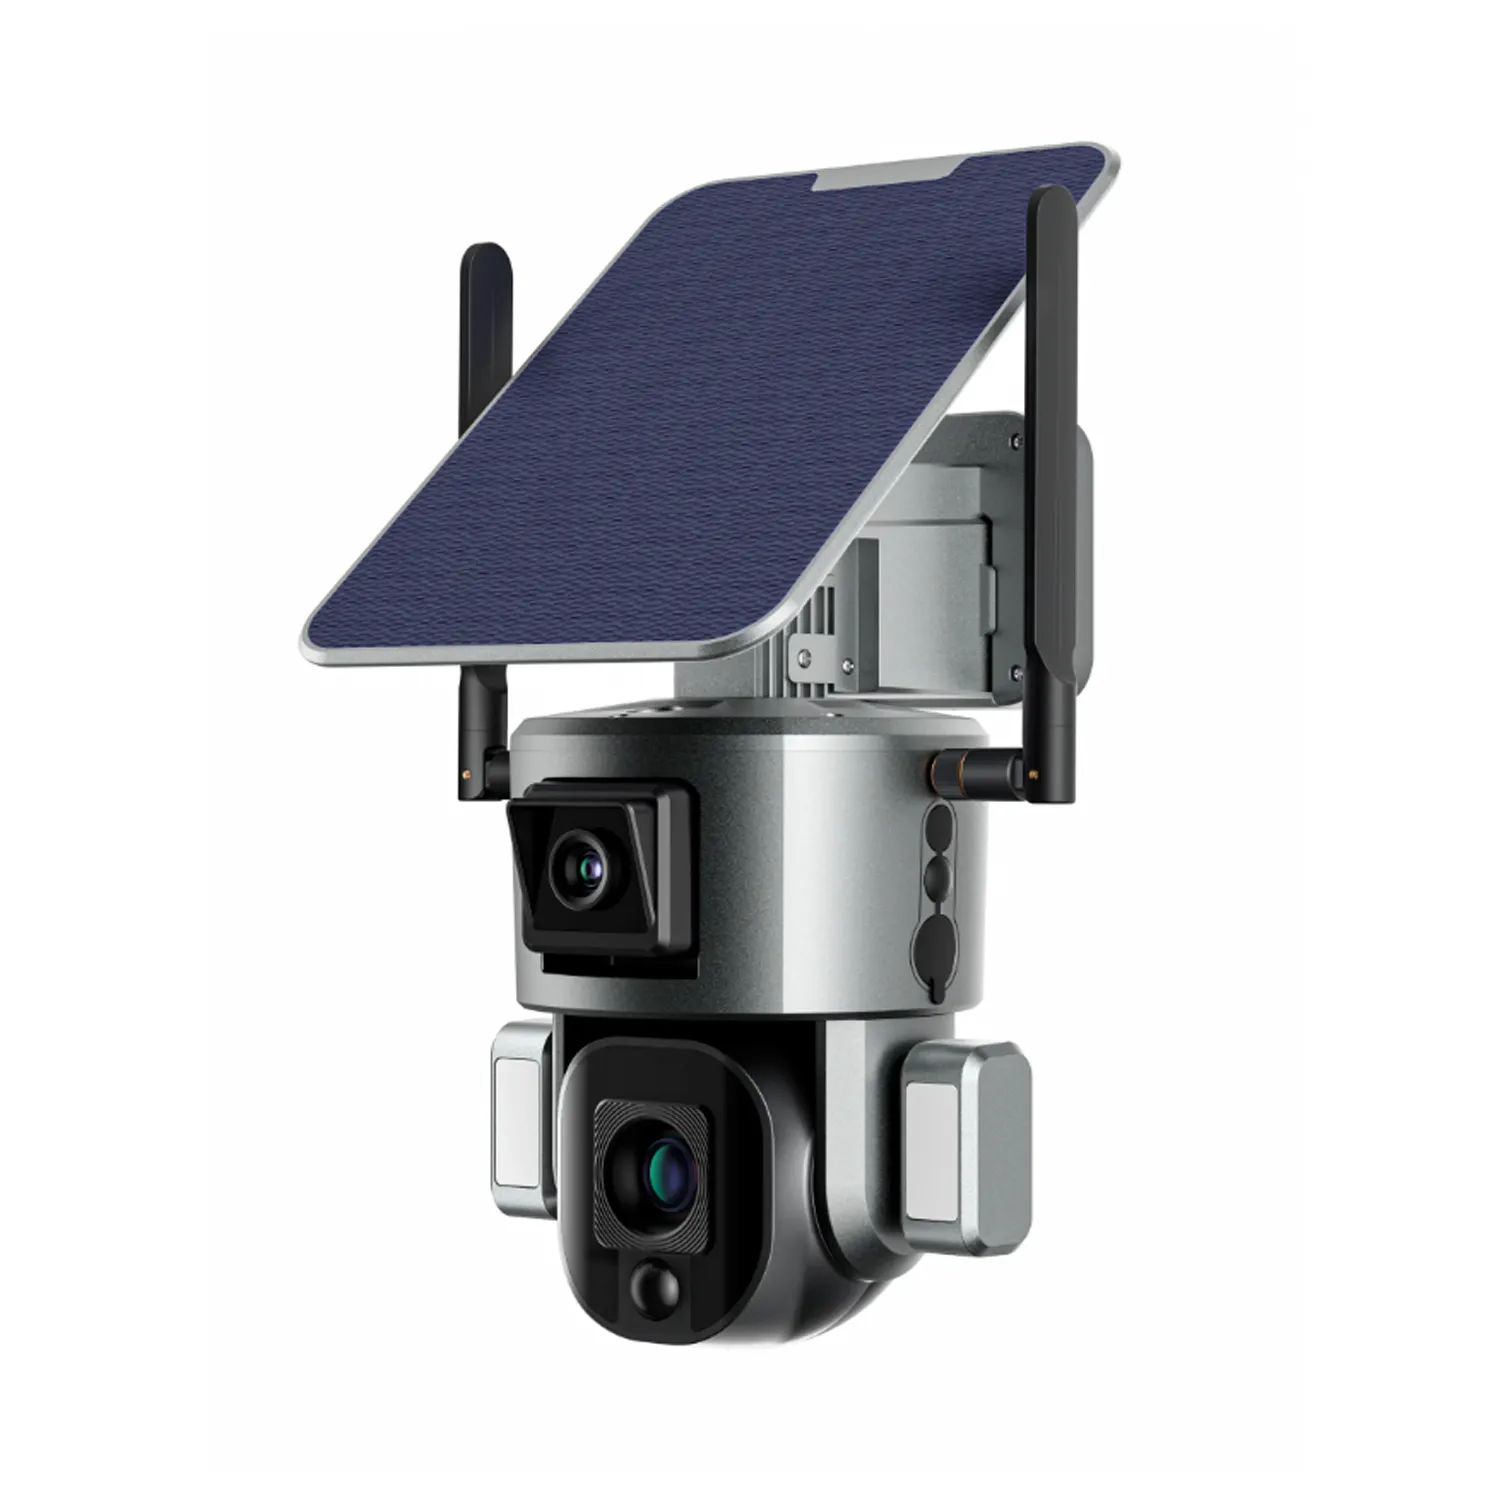 Sistem kamera keamanan Panel surya 4g-aktif untuk pengawasan matahari andal dan keamanan yang ditingkatkan